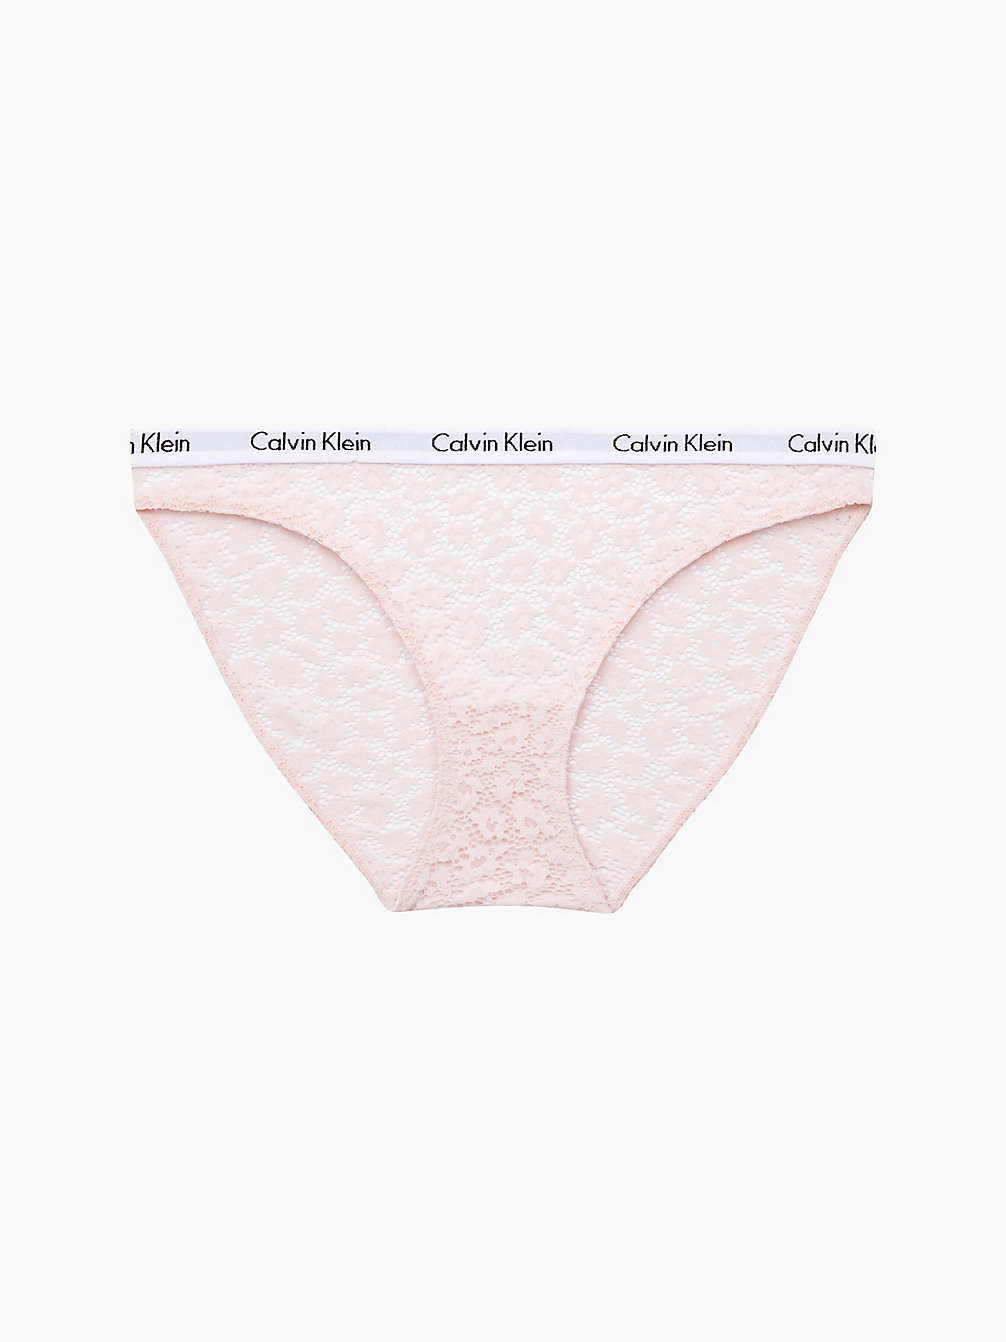 NYMPHS THIGH Bikini Brief - Carousel undefined women Calvin Klein